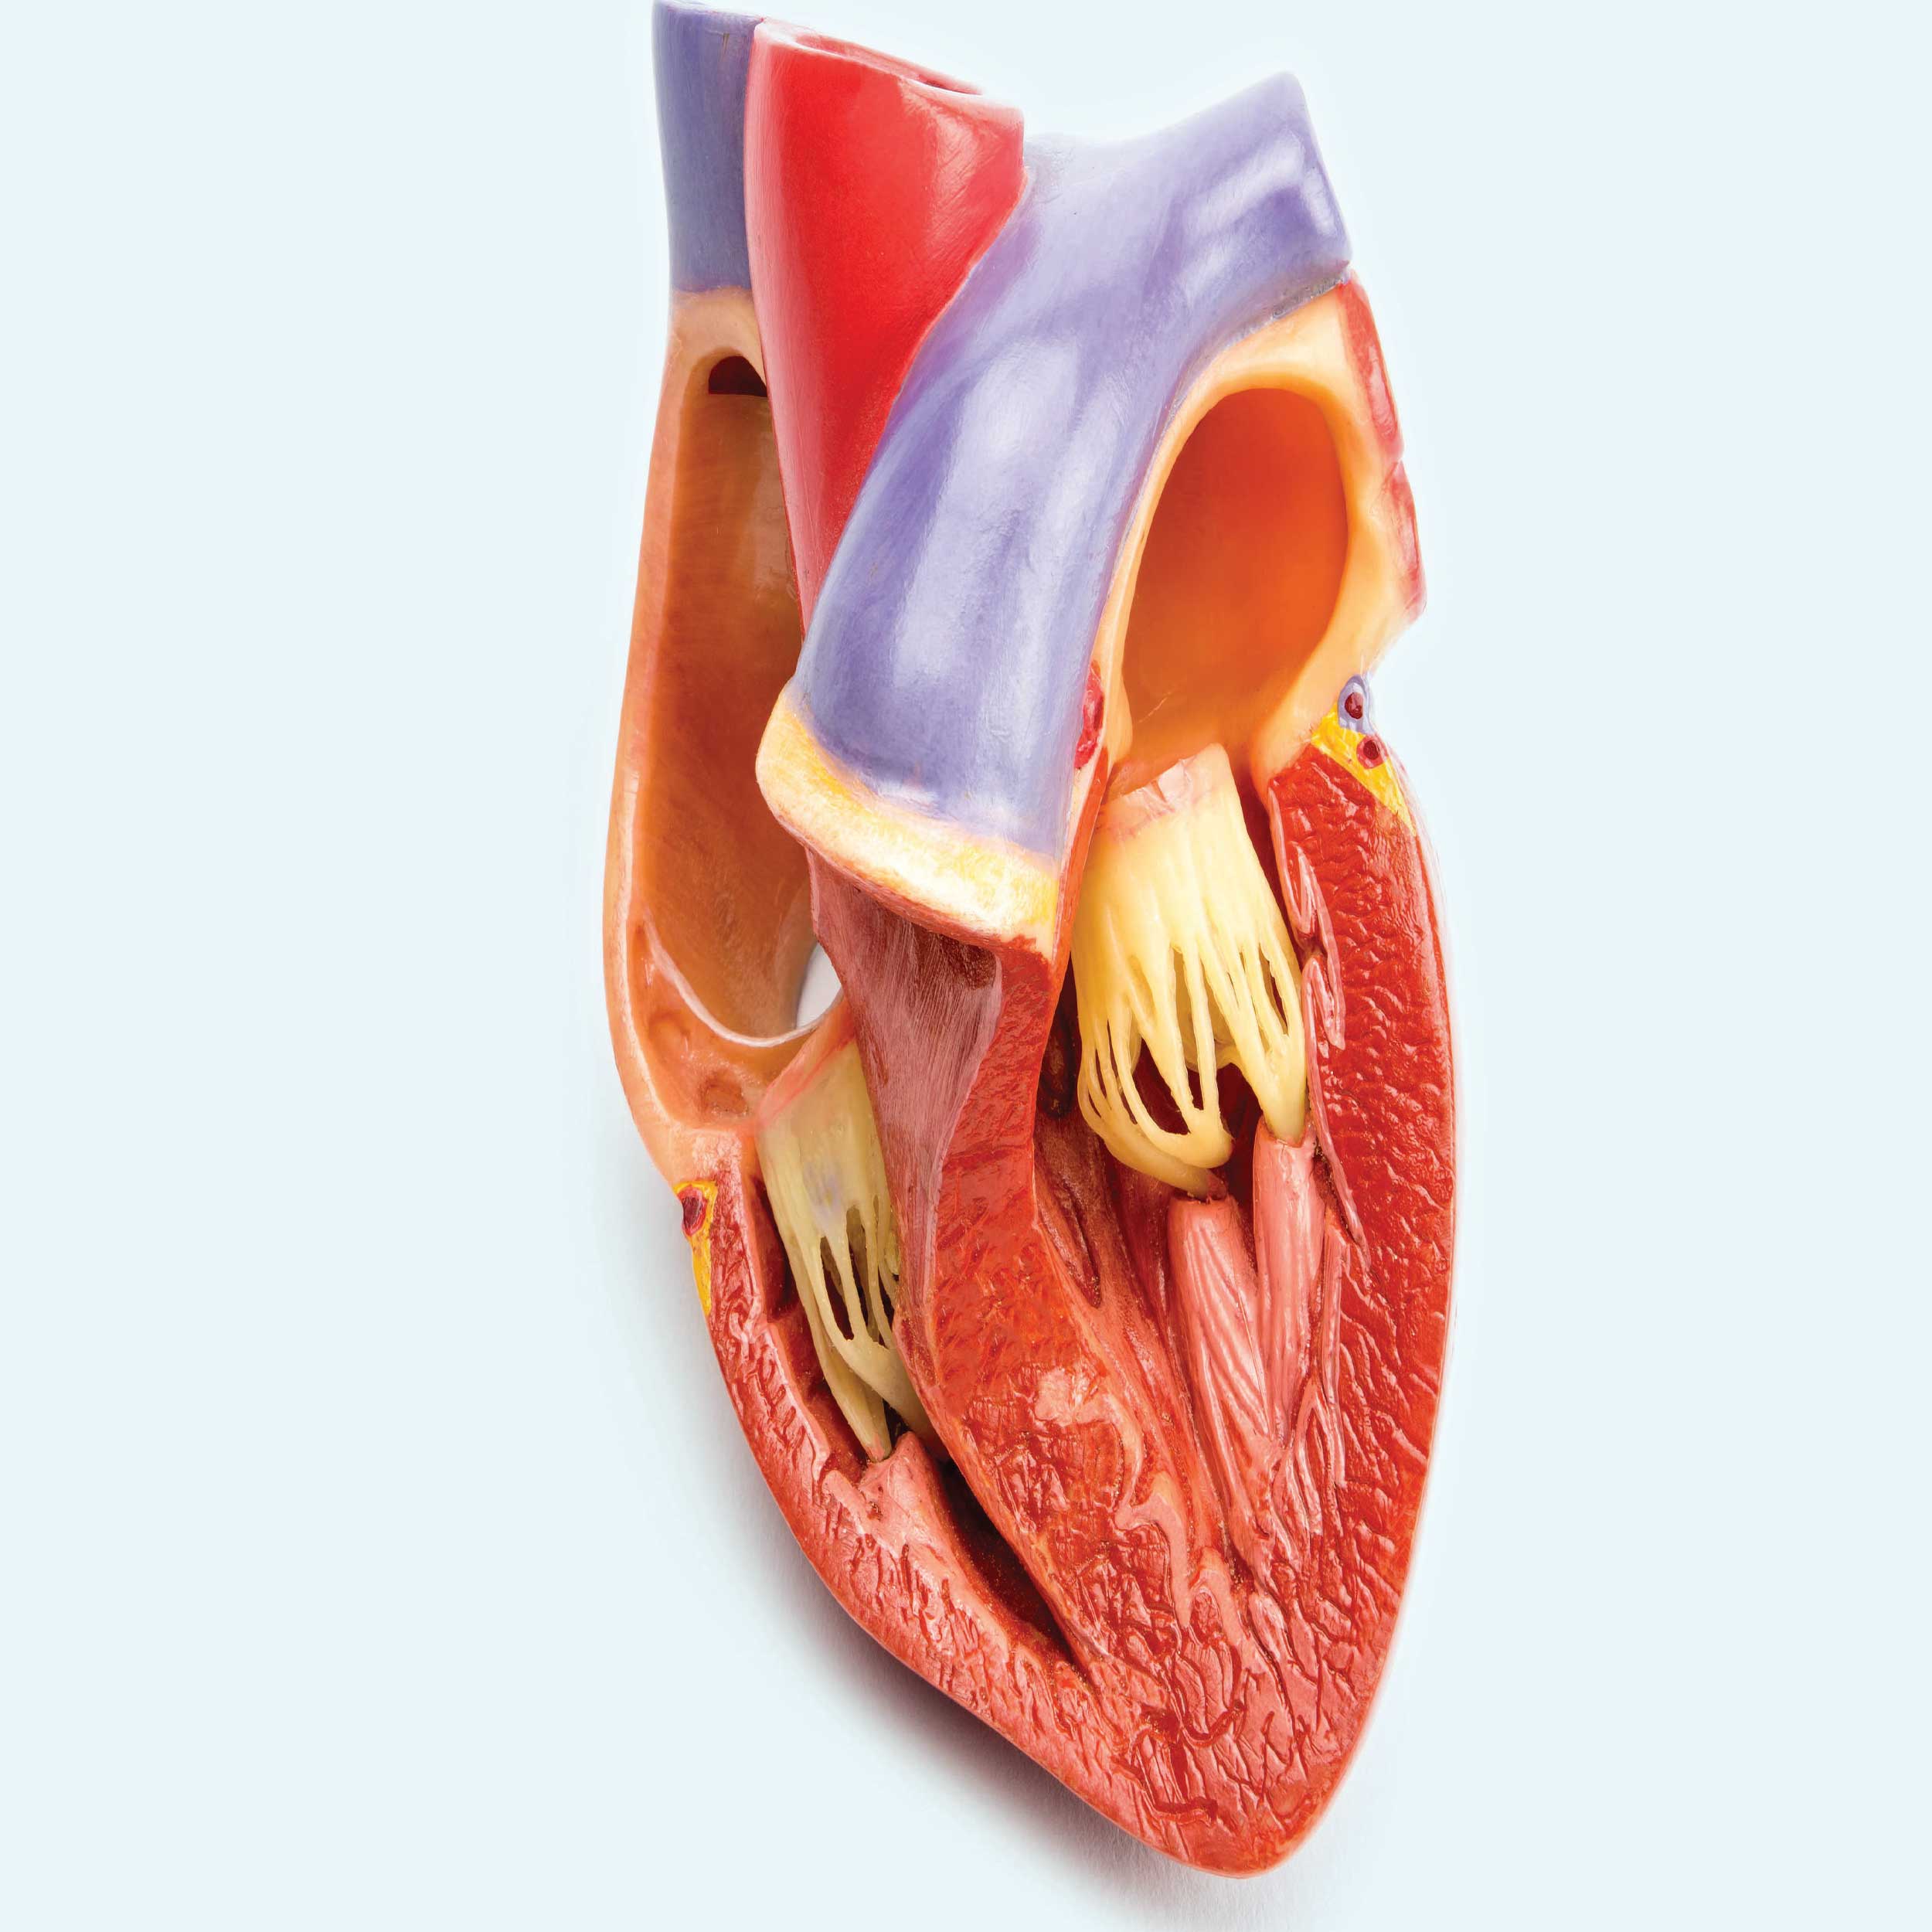 در کاردیومیوپاتی عضلات قلب بزرگ شده و قدرت خون‌رسانی کم می‌شود.